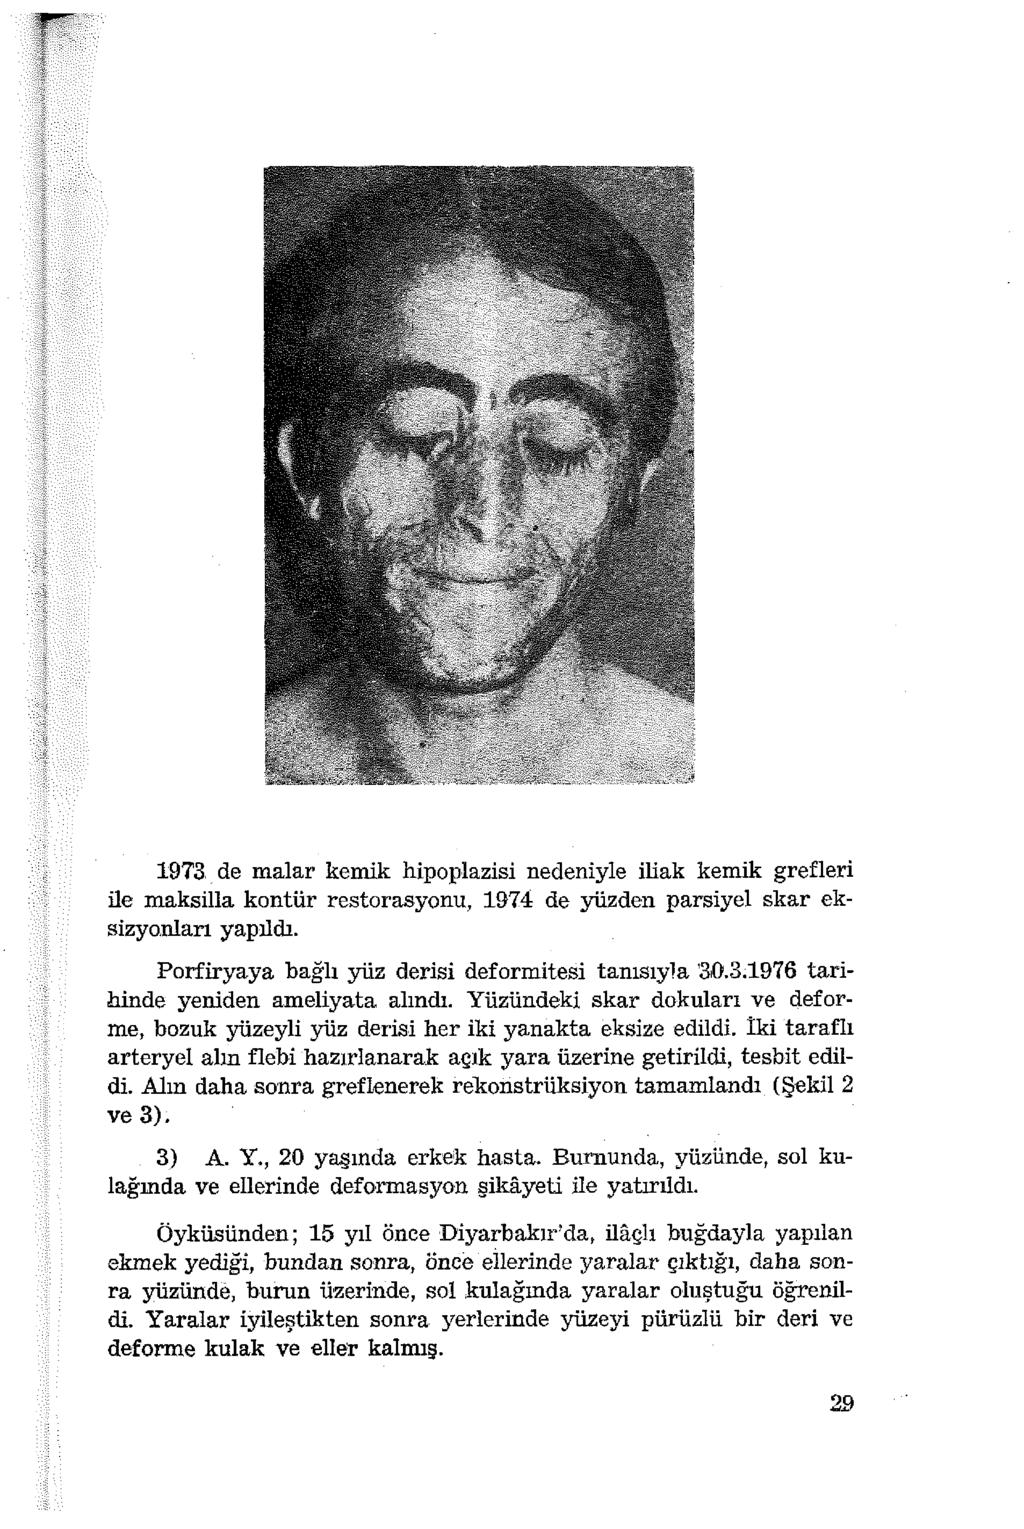 19T3.de malar kemik hipoplazisi nedeniyle iliak kemik grefleri ile maksilla kontür restorasyonu, 1974 de yüzden parsiyel skar eksizyonları yapıldı.